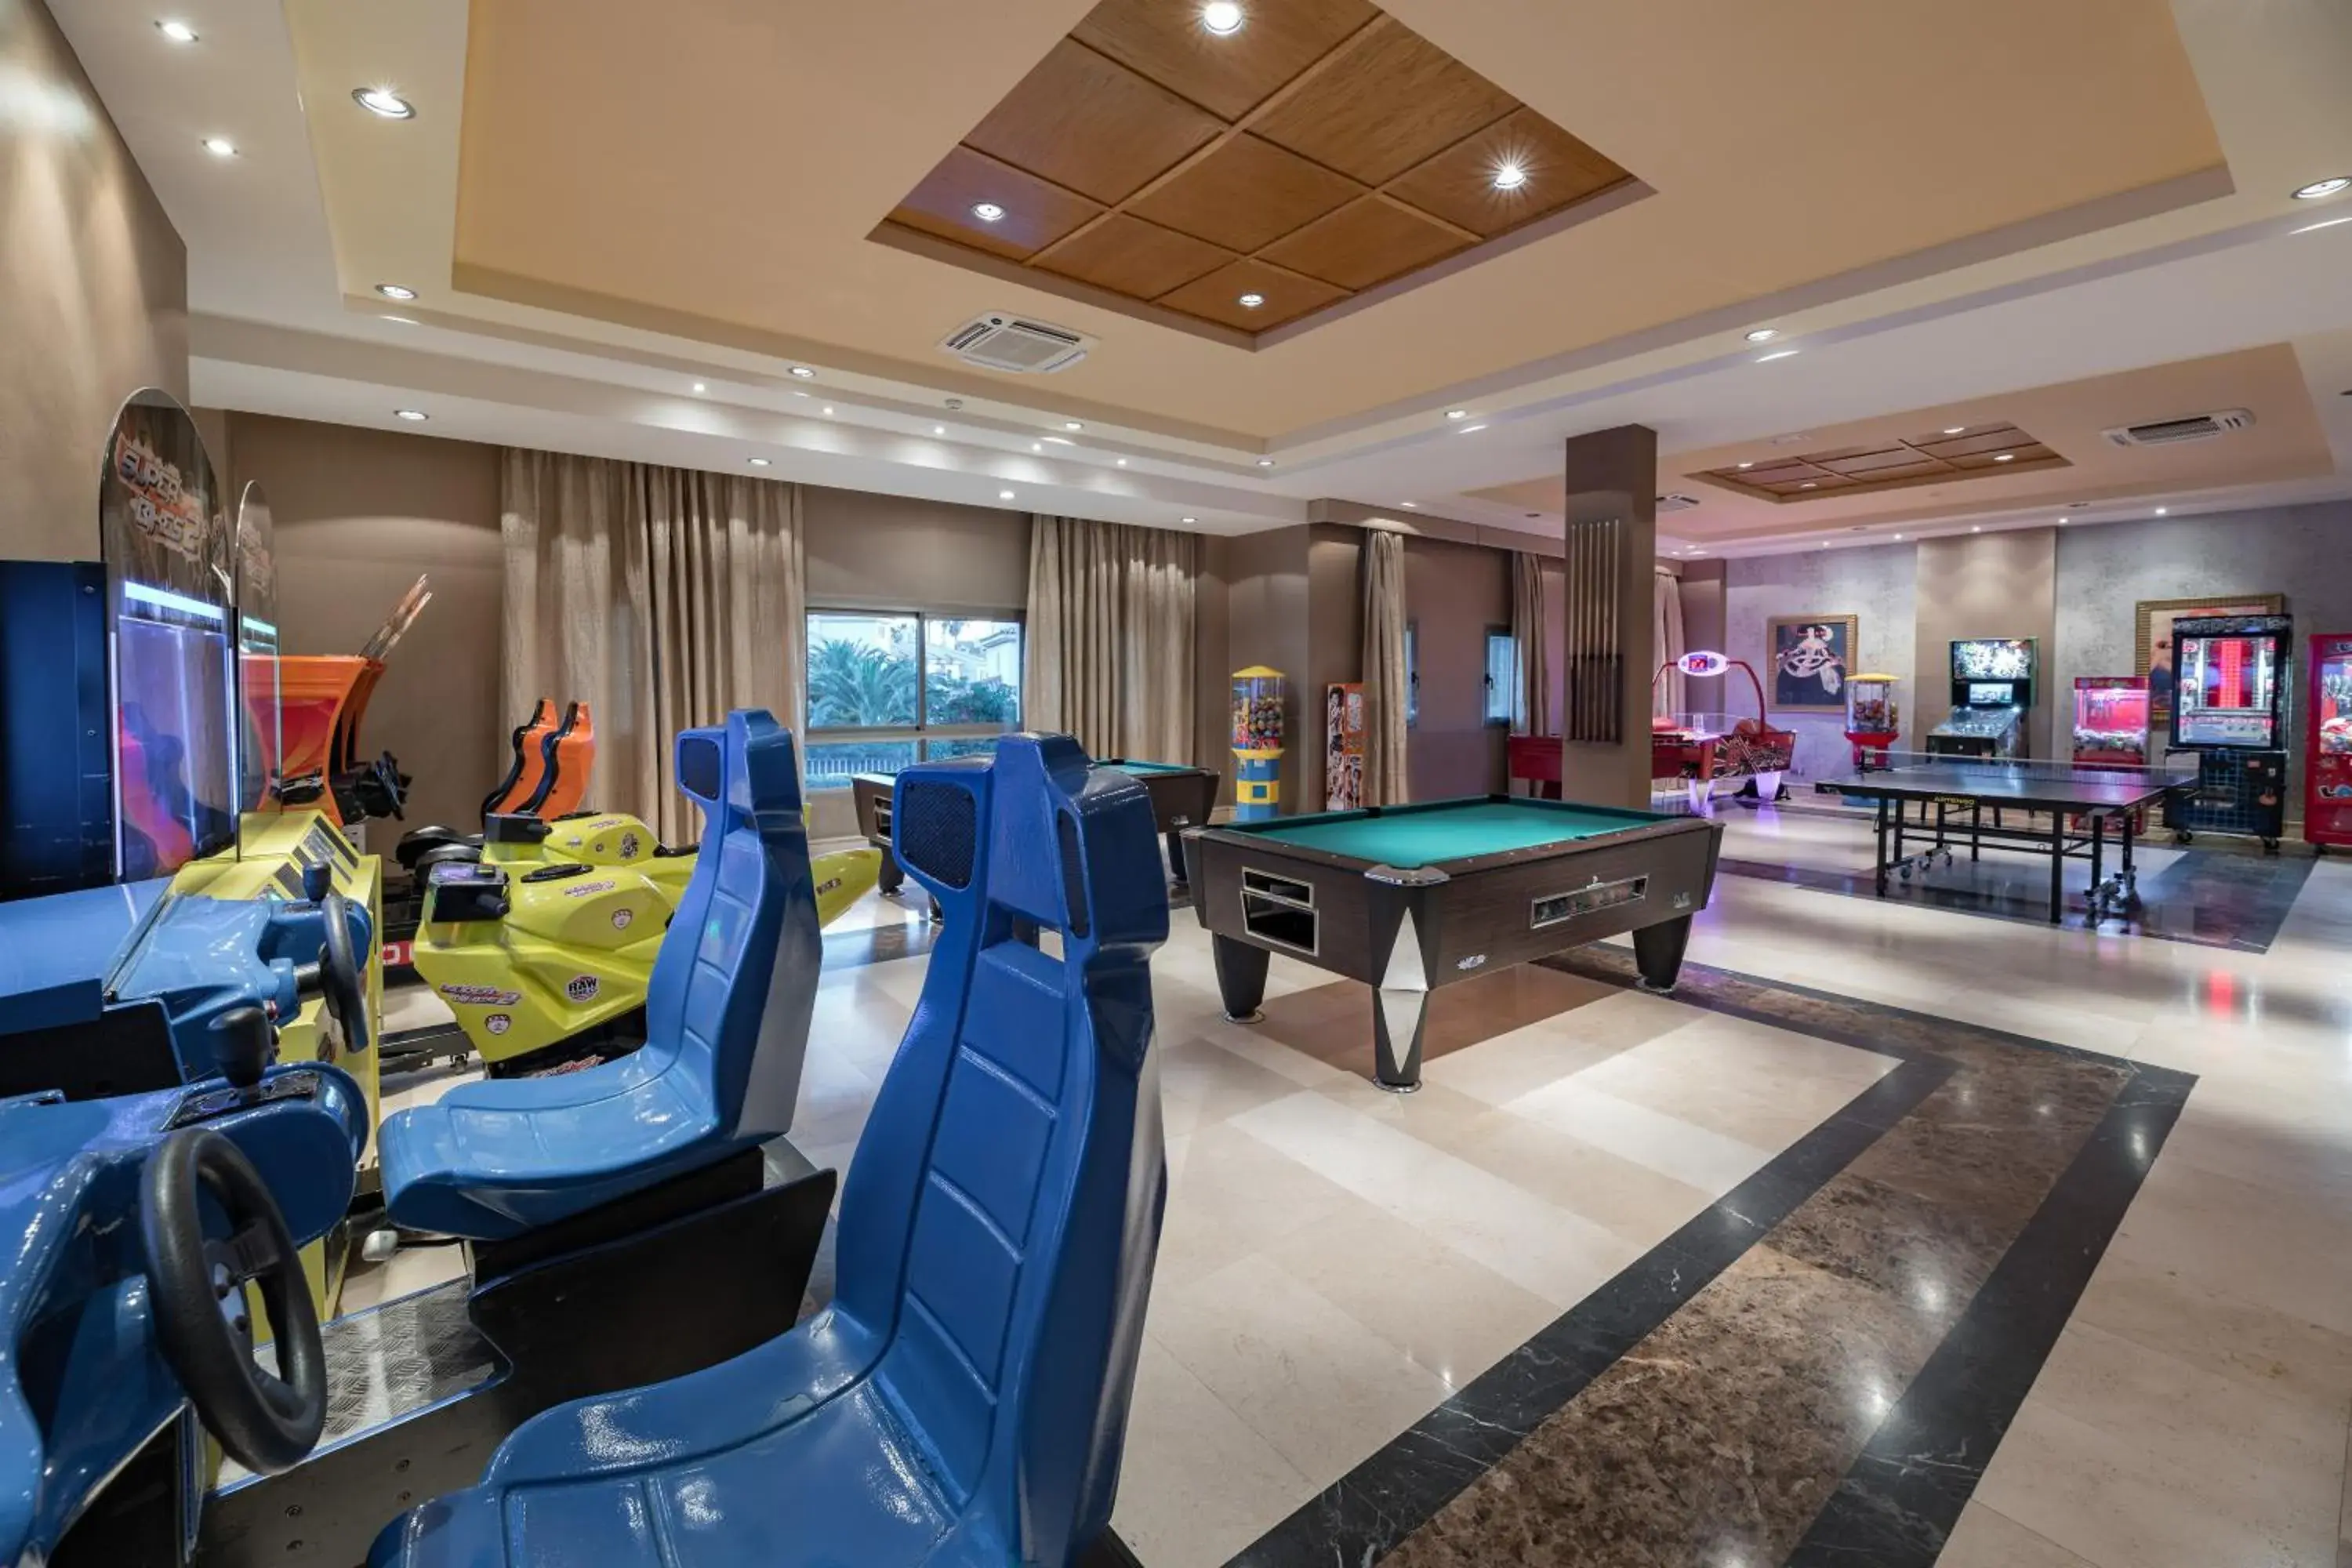 Game Room in Elba Costa Ballena Beach & Thalasso Resort